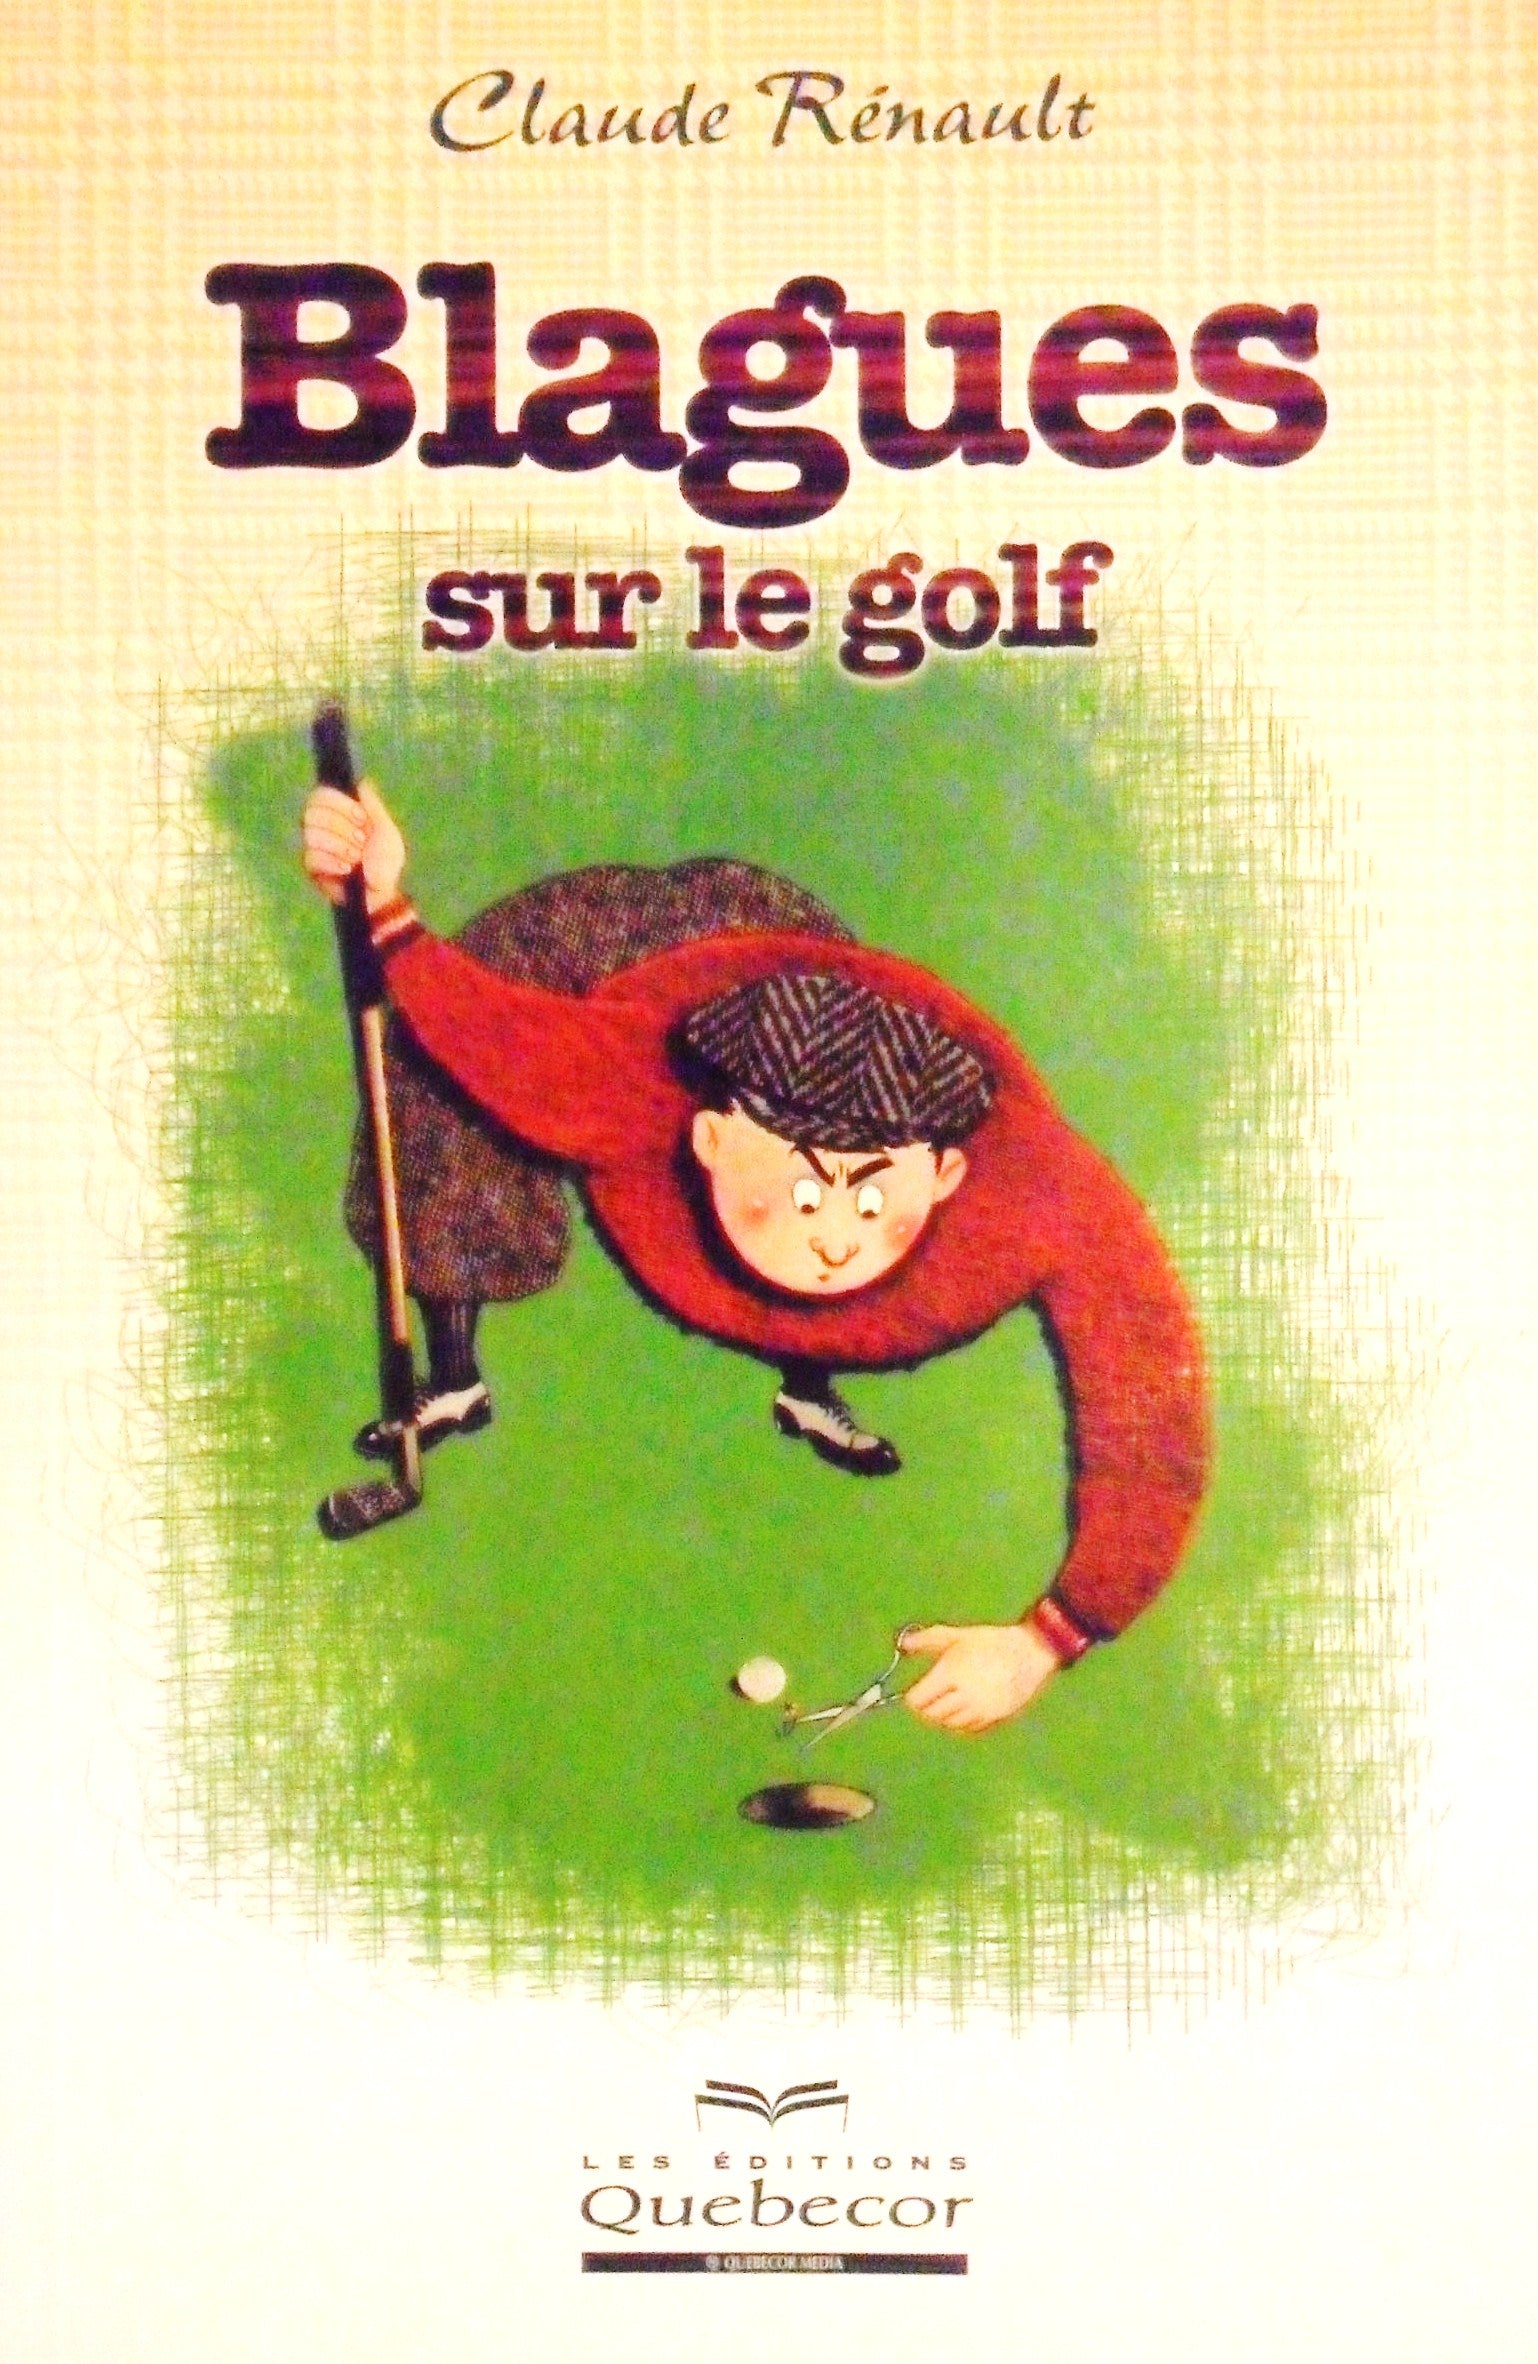 Livre ISBN 2764004702 Blagues sur le golf (Claude Rénault)